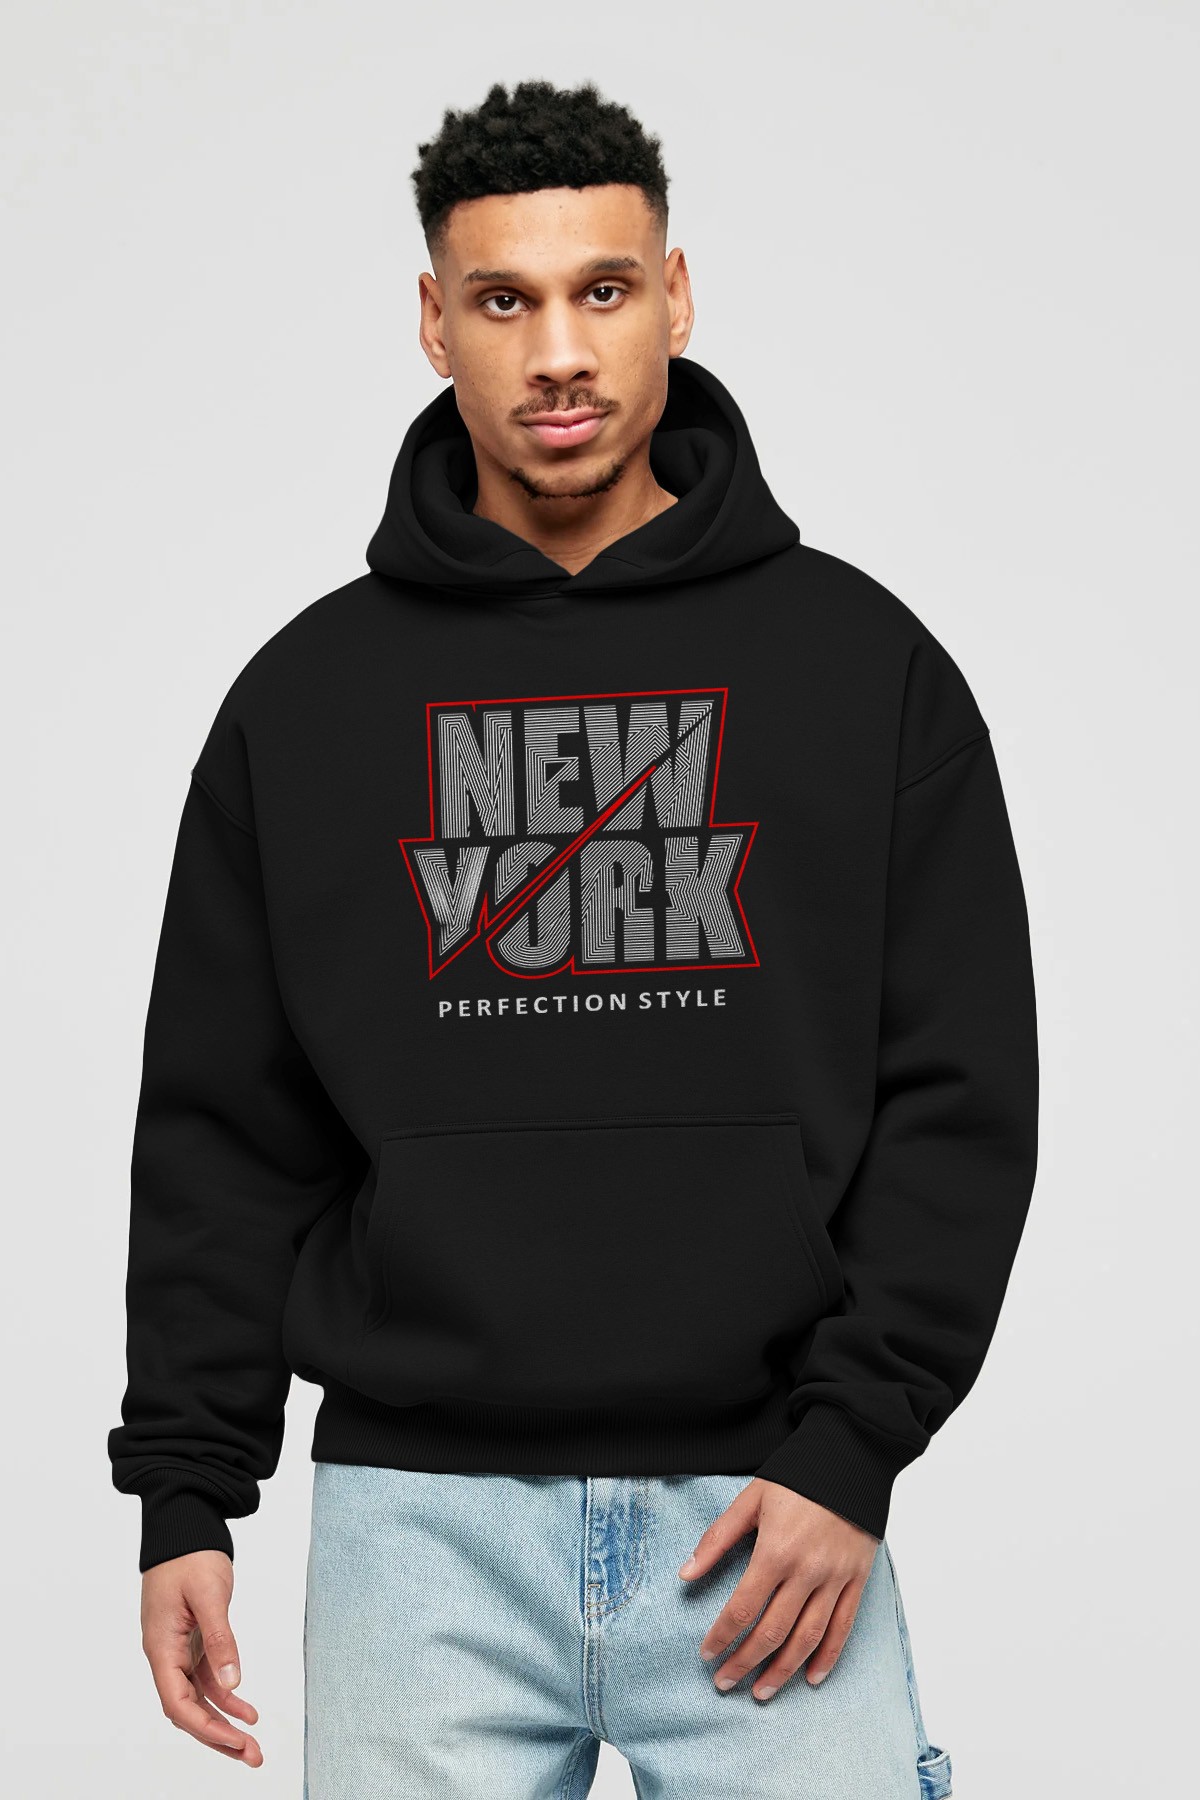 New York Perfection Style Ön Baskılı Hoodie Oversize Kapüşonlu Sweatshirt Erkek Kadın Unisex